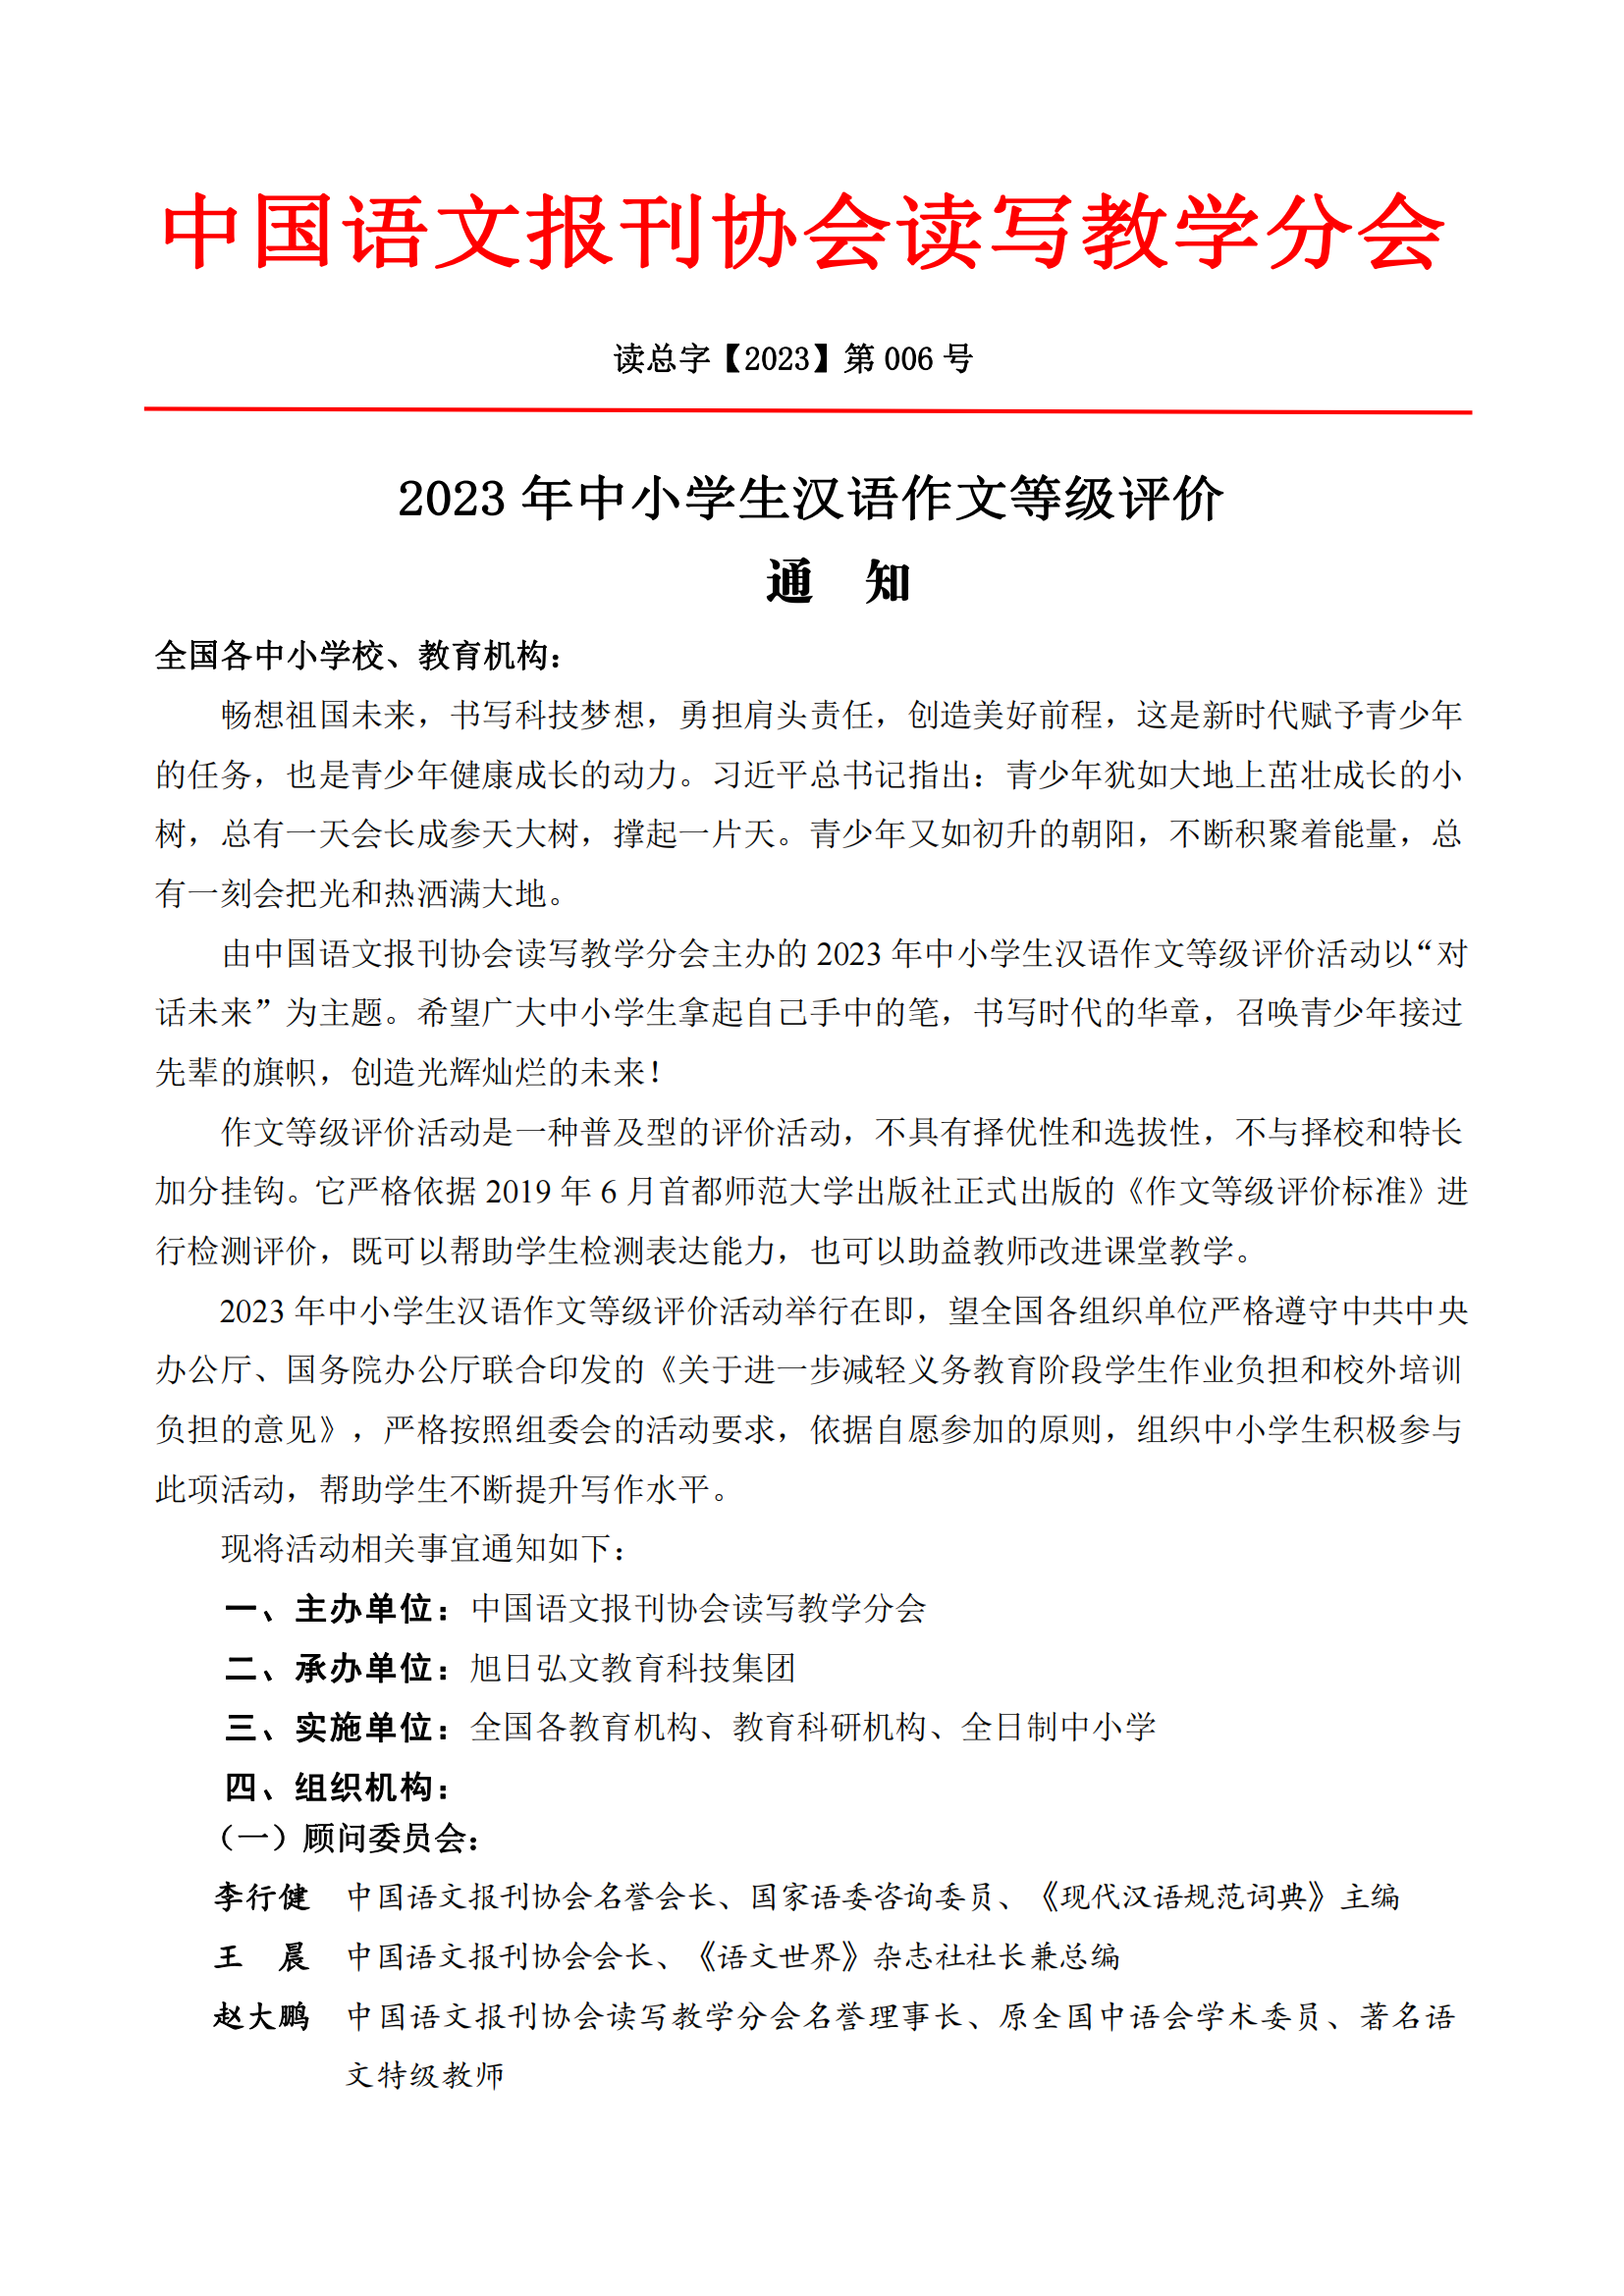 2023年中小学生汉语作文等级评价通知_00.png